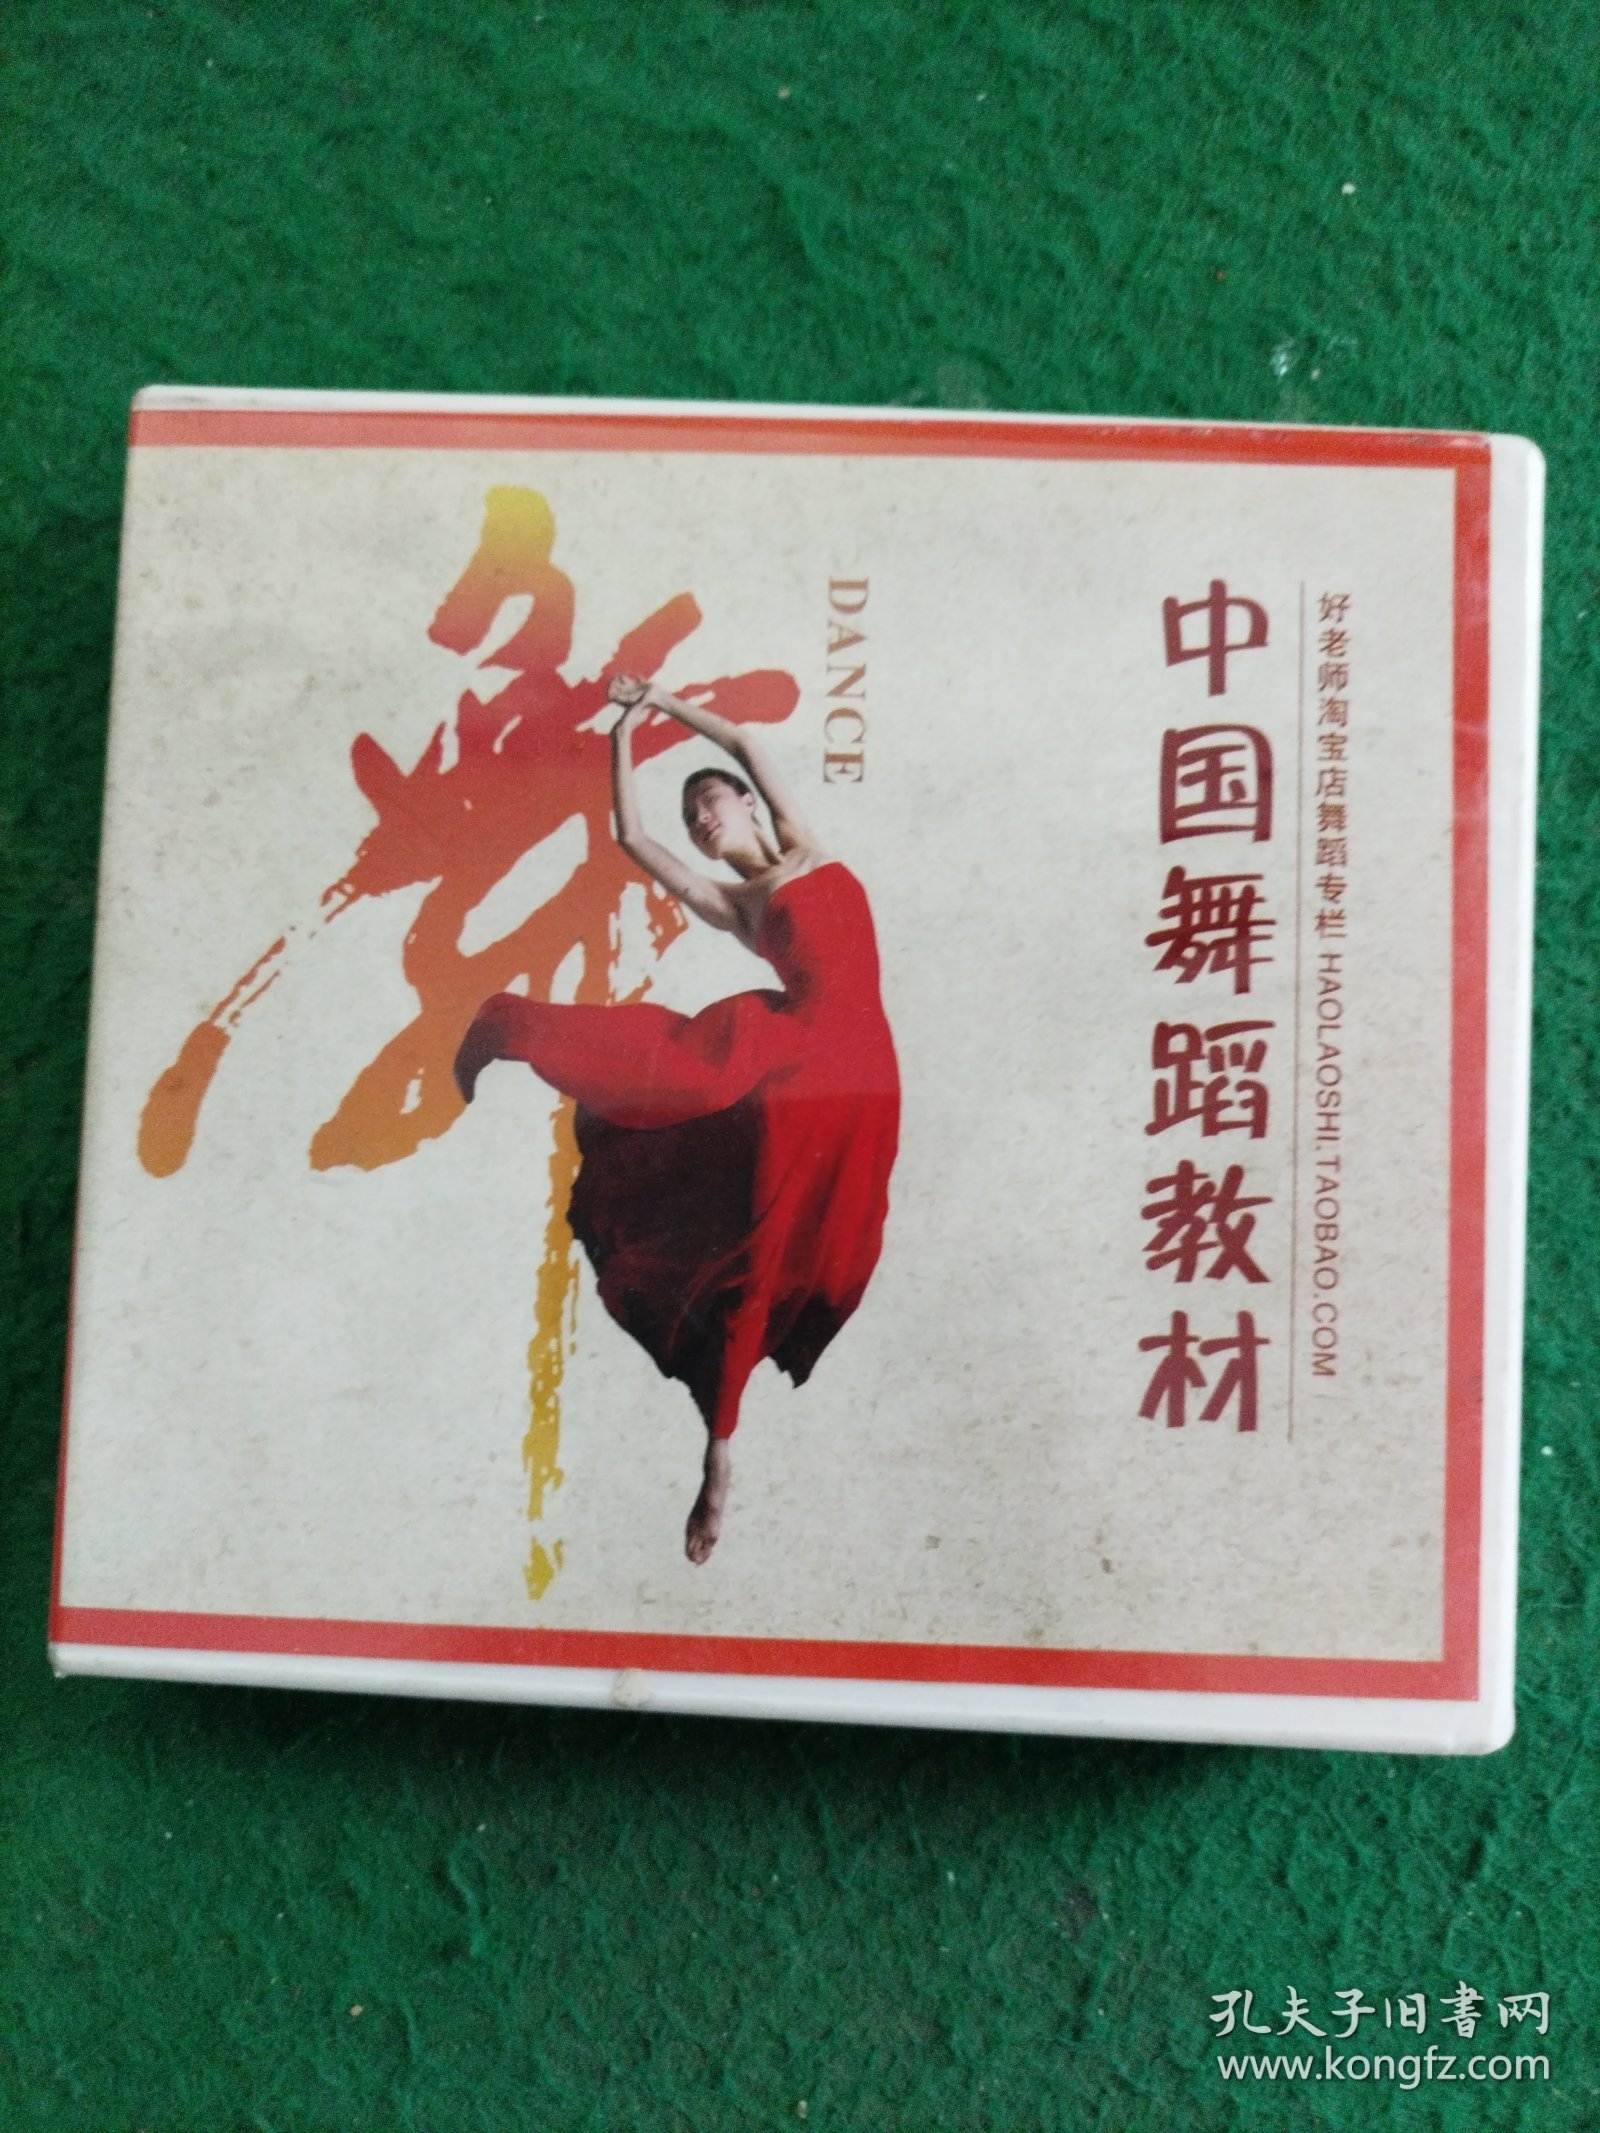 中国舞蹈教材DVD：第六届小荷风釆11碟、第七届全国幼儿园音乐观摩课12碟。(共23碟合售)